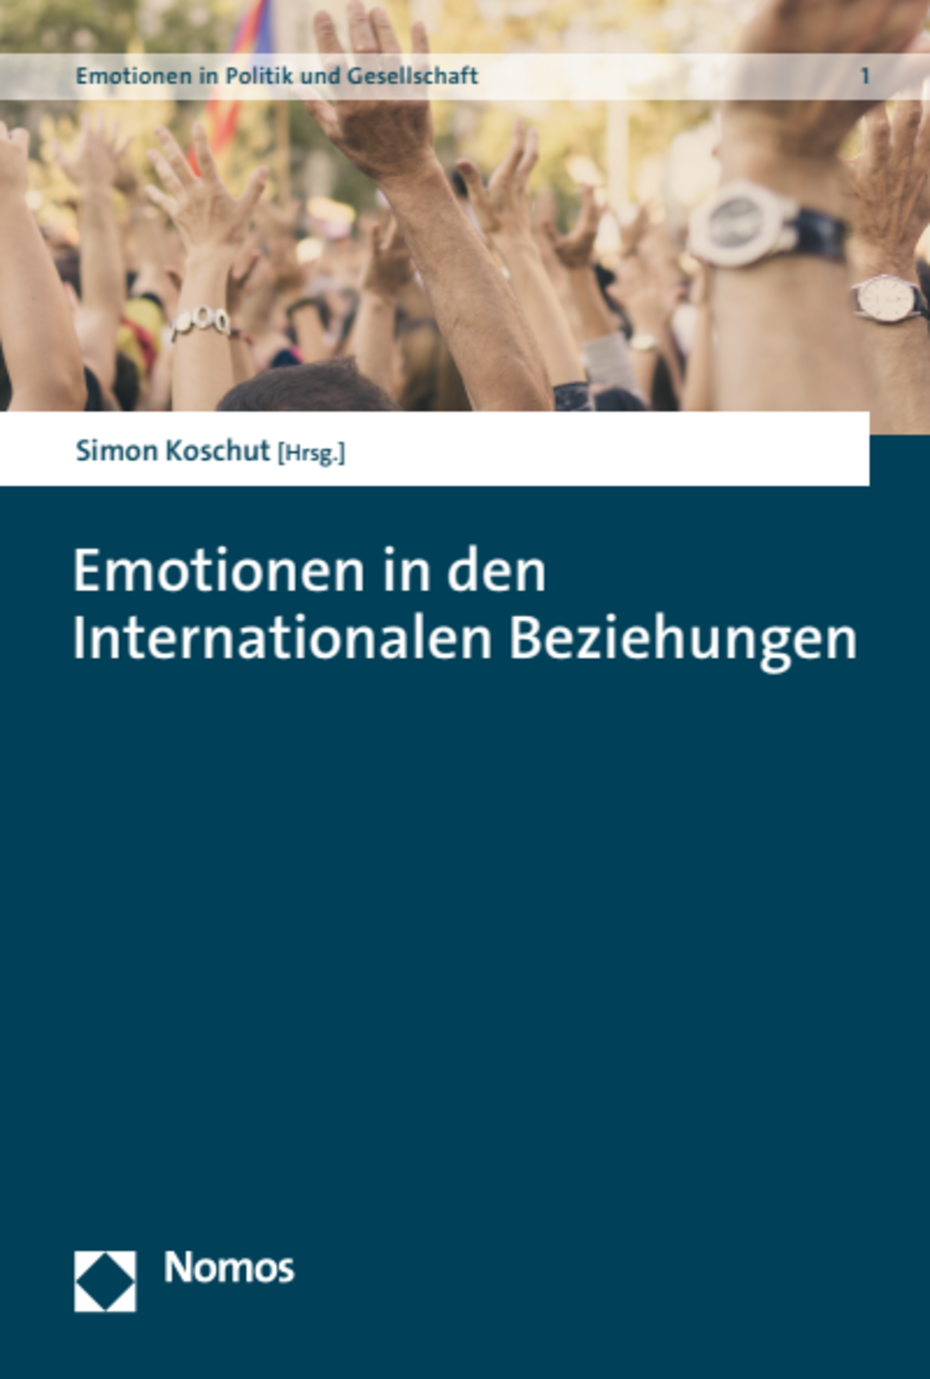 Emotionen in den internationalen Beziehungen (Cover)